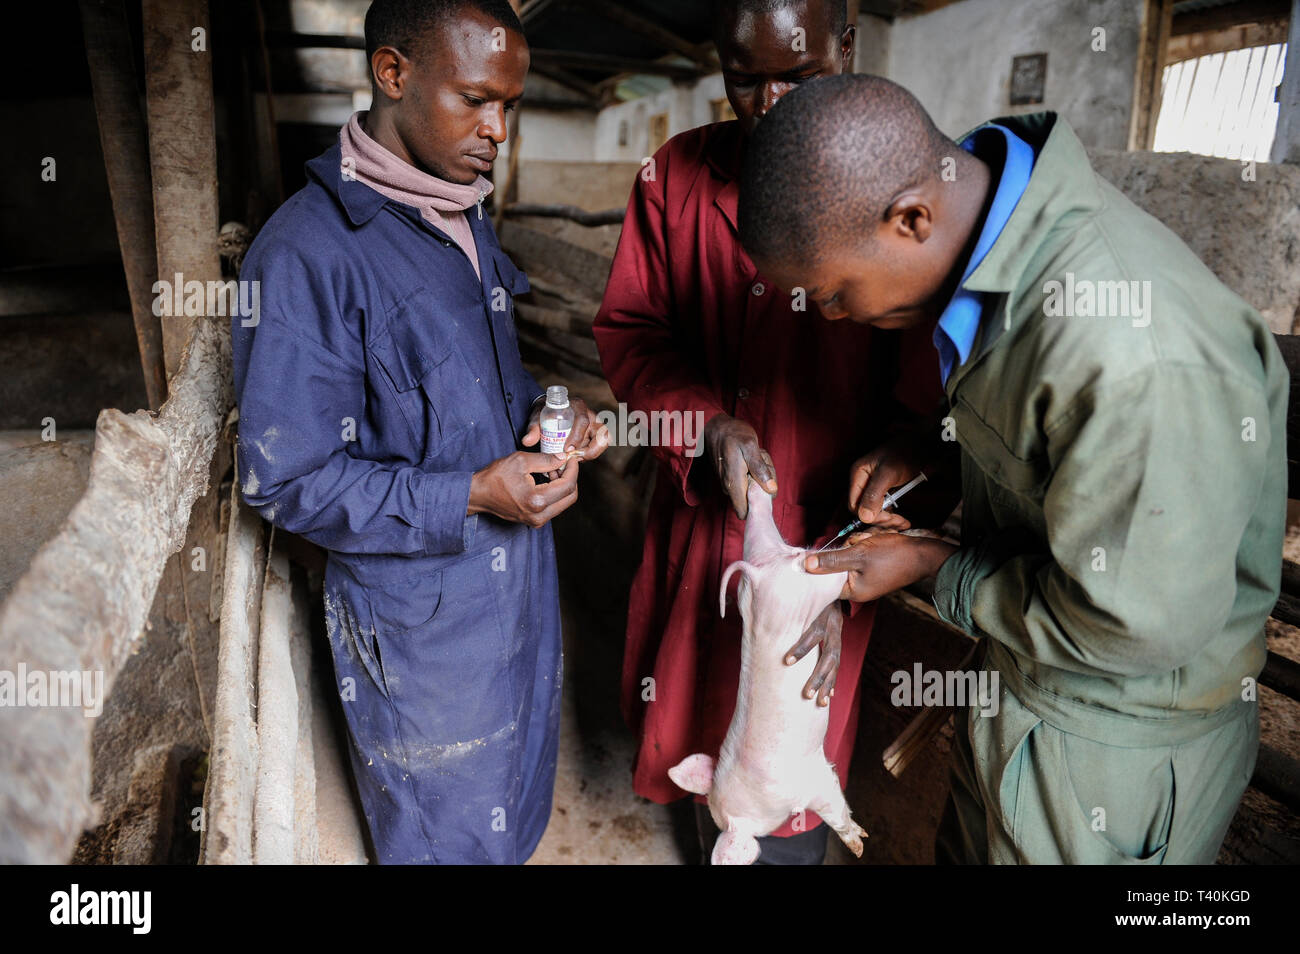 Limuru, KENYA Tigoni, élevage, élevage de porcs, des services vétérinaires, la vaccination pour un porcelet Banque D'Images